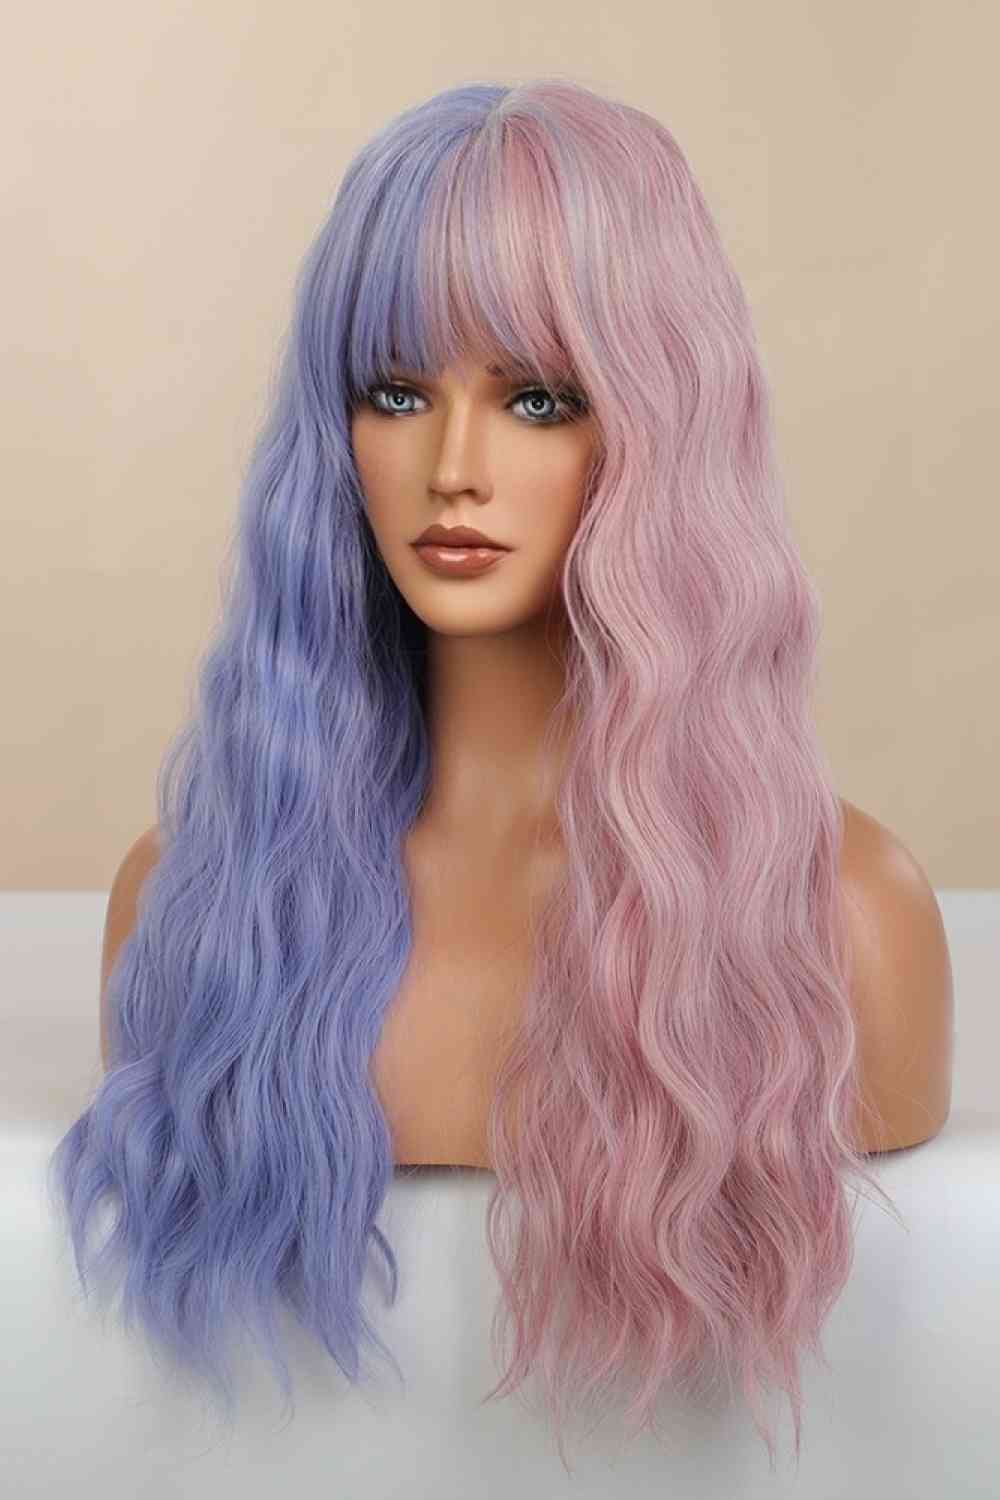 13*1" Full-Machine Wigs Synthetic Long Wave 26" in Blue/Pink Split Dye BLUE ZONE PLANET